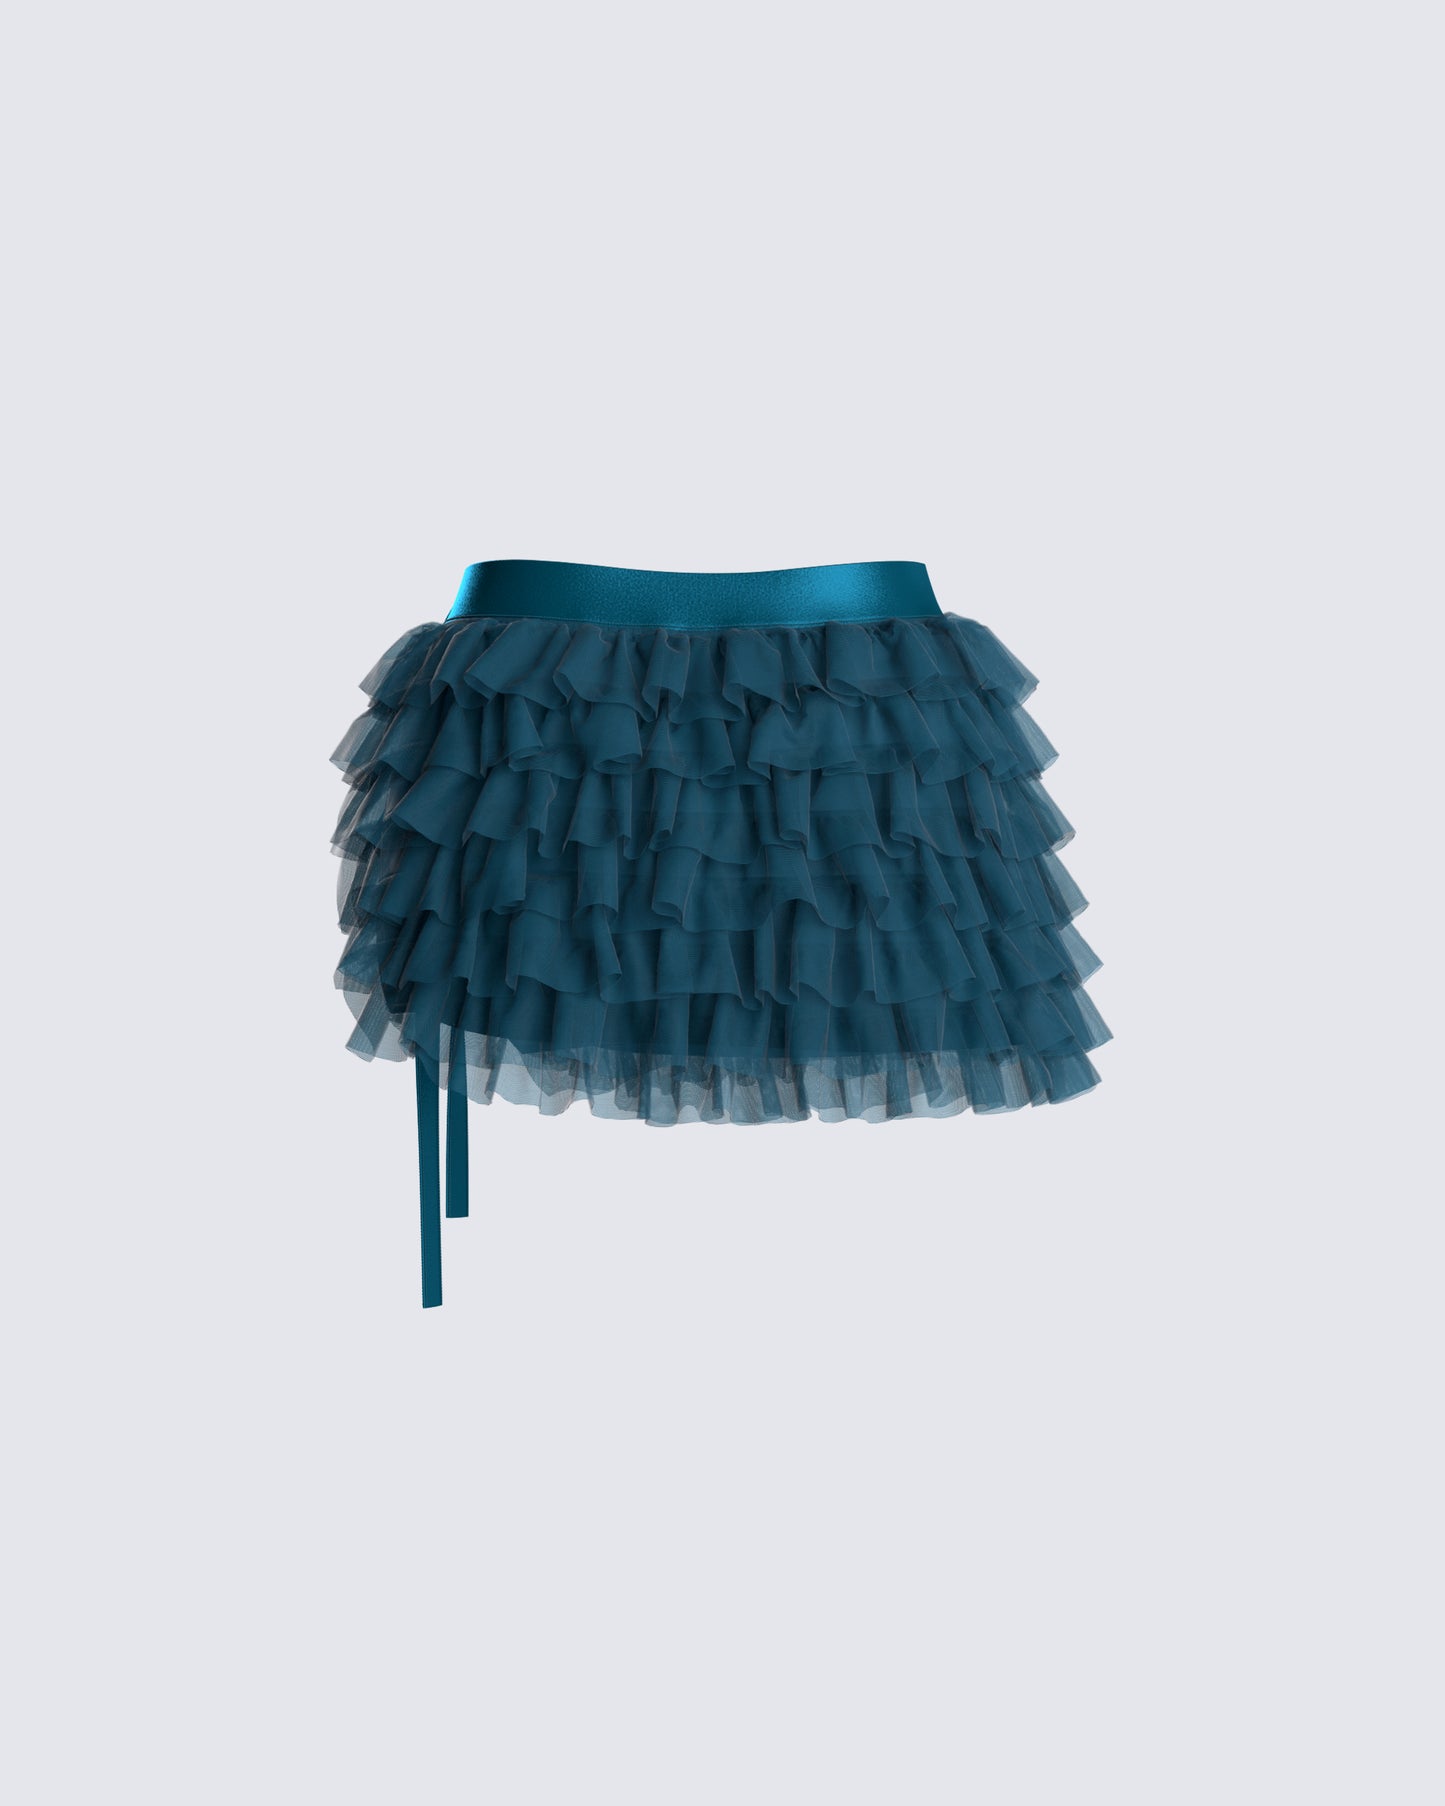 Merrick Teal Tulle Mini Skirt